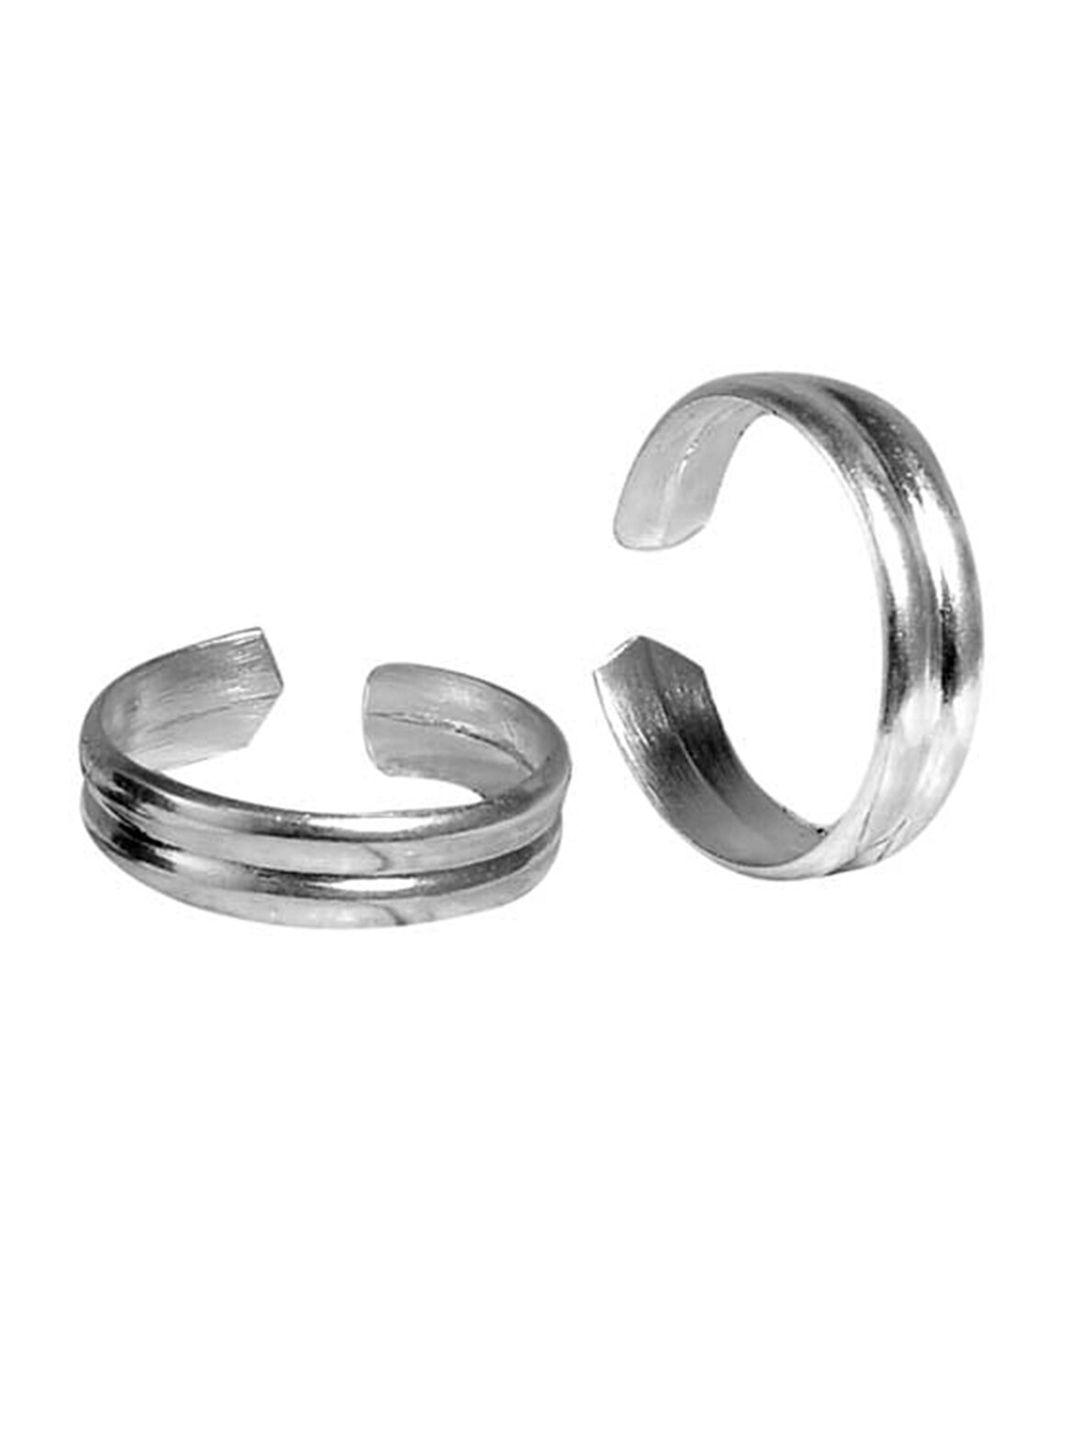 abhooshan-92.5-sterling-silver-adjustable-toe-rings